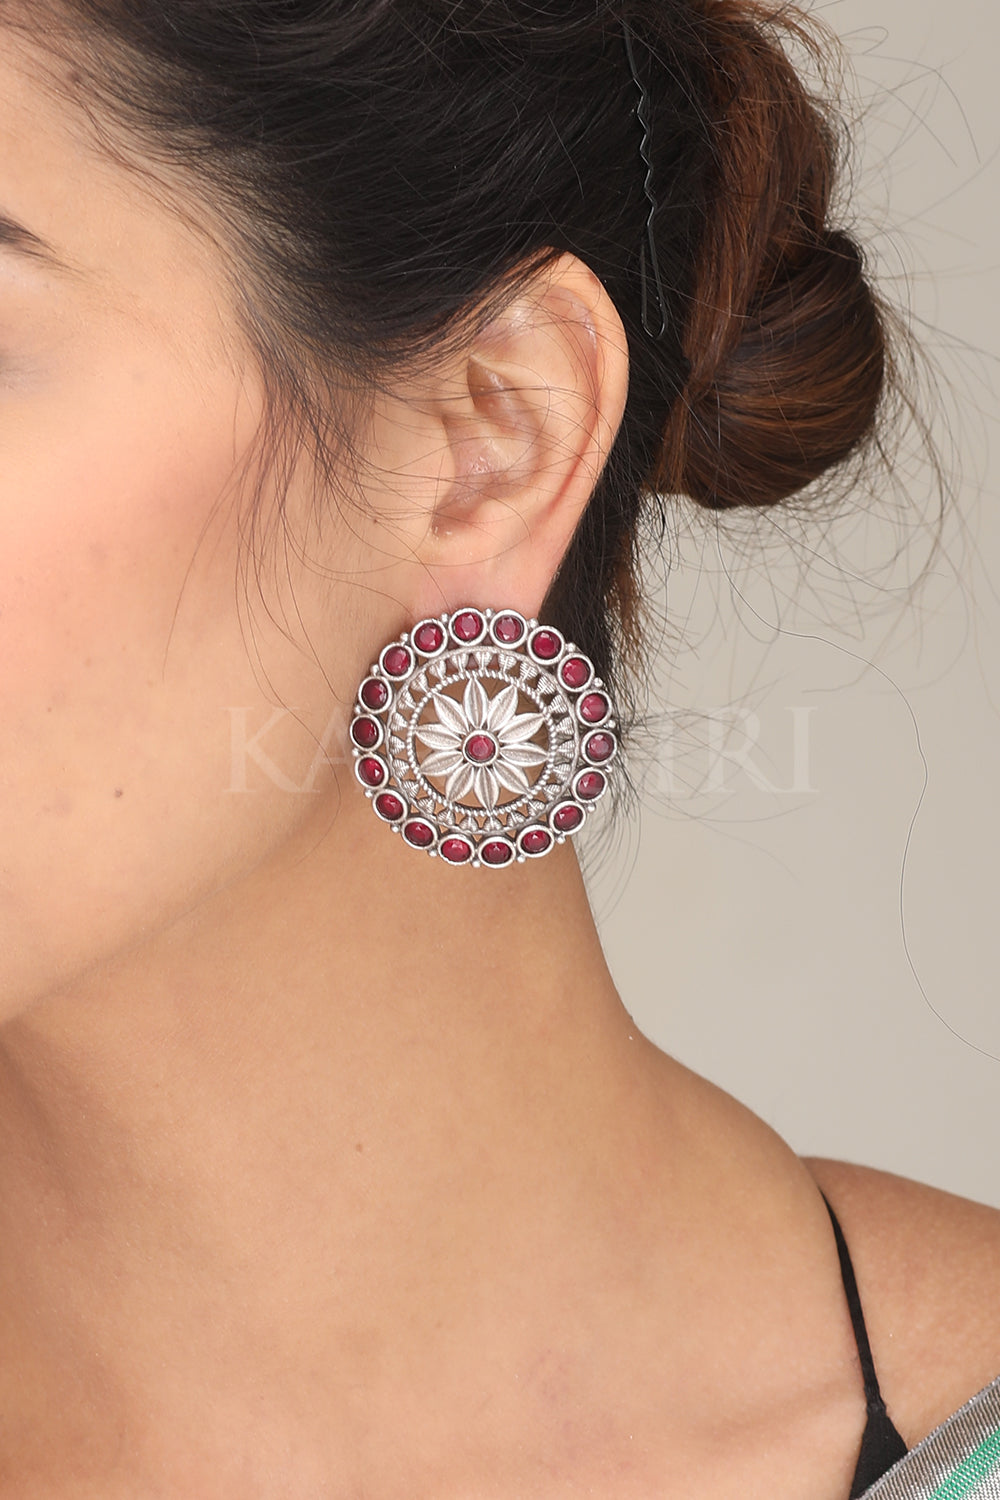 Kundan Precious Stone Earrings Buy Earrings Online Cheap, Jhumka Earrings  Online Shopping, Earrings - Shop From The